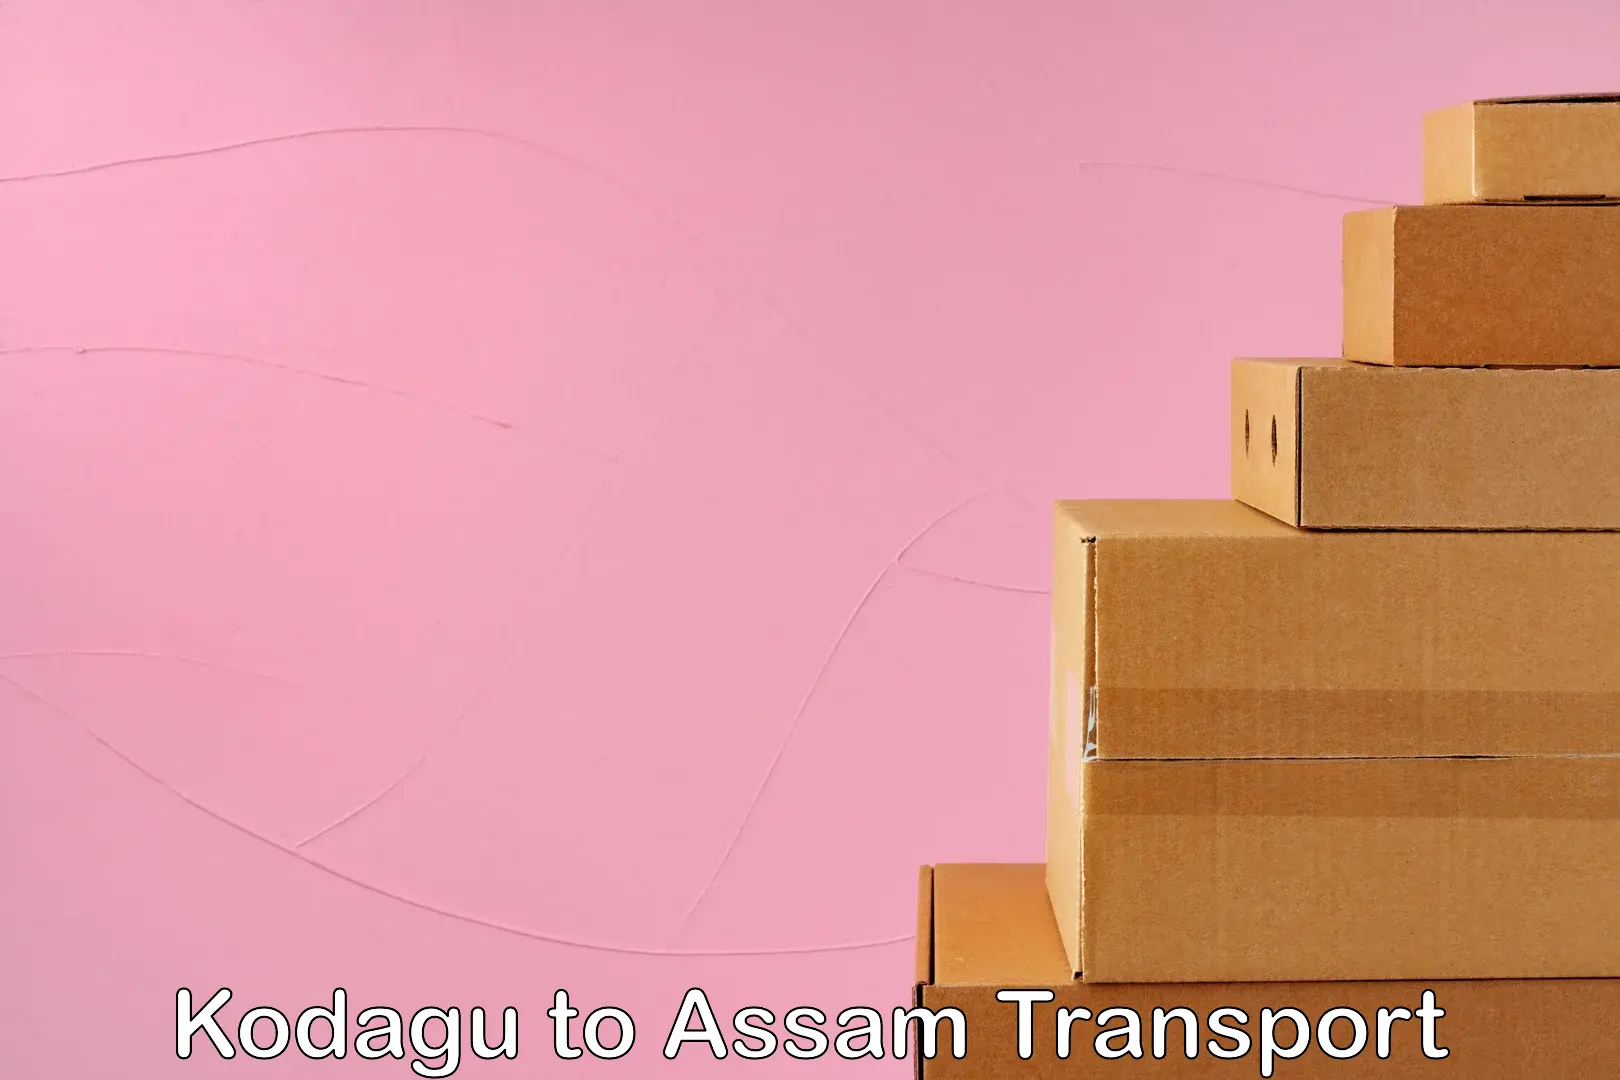 Transport shared services Kodagu to Assam